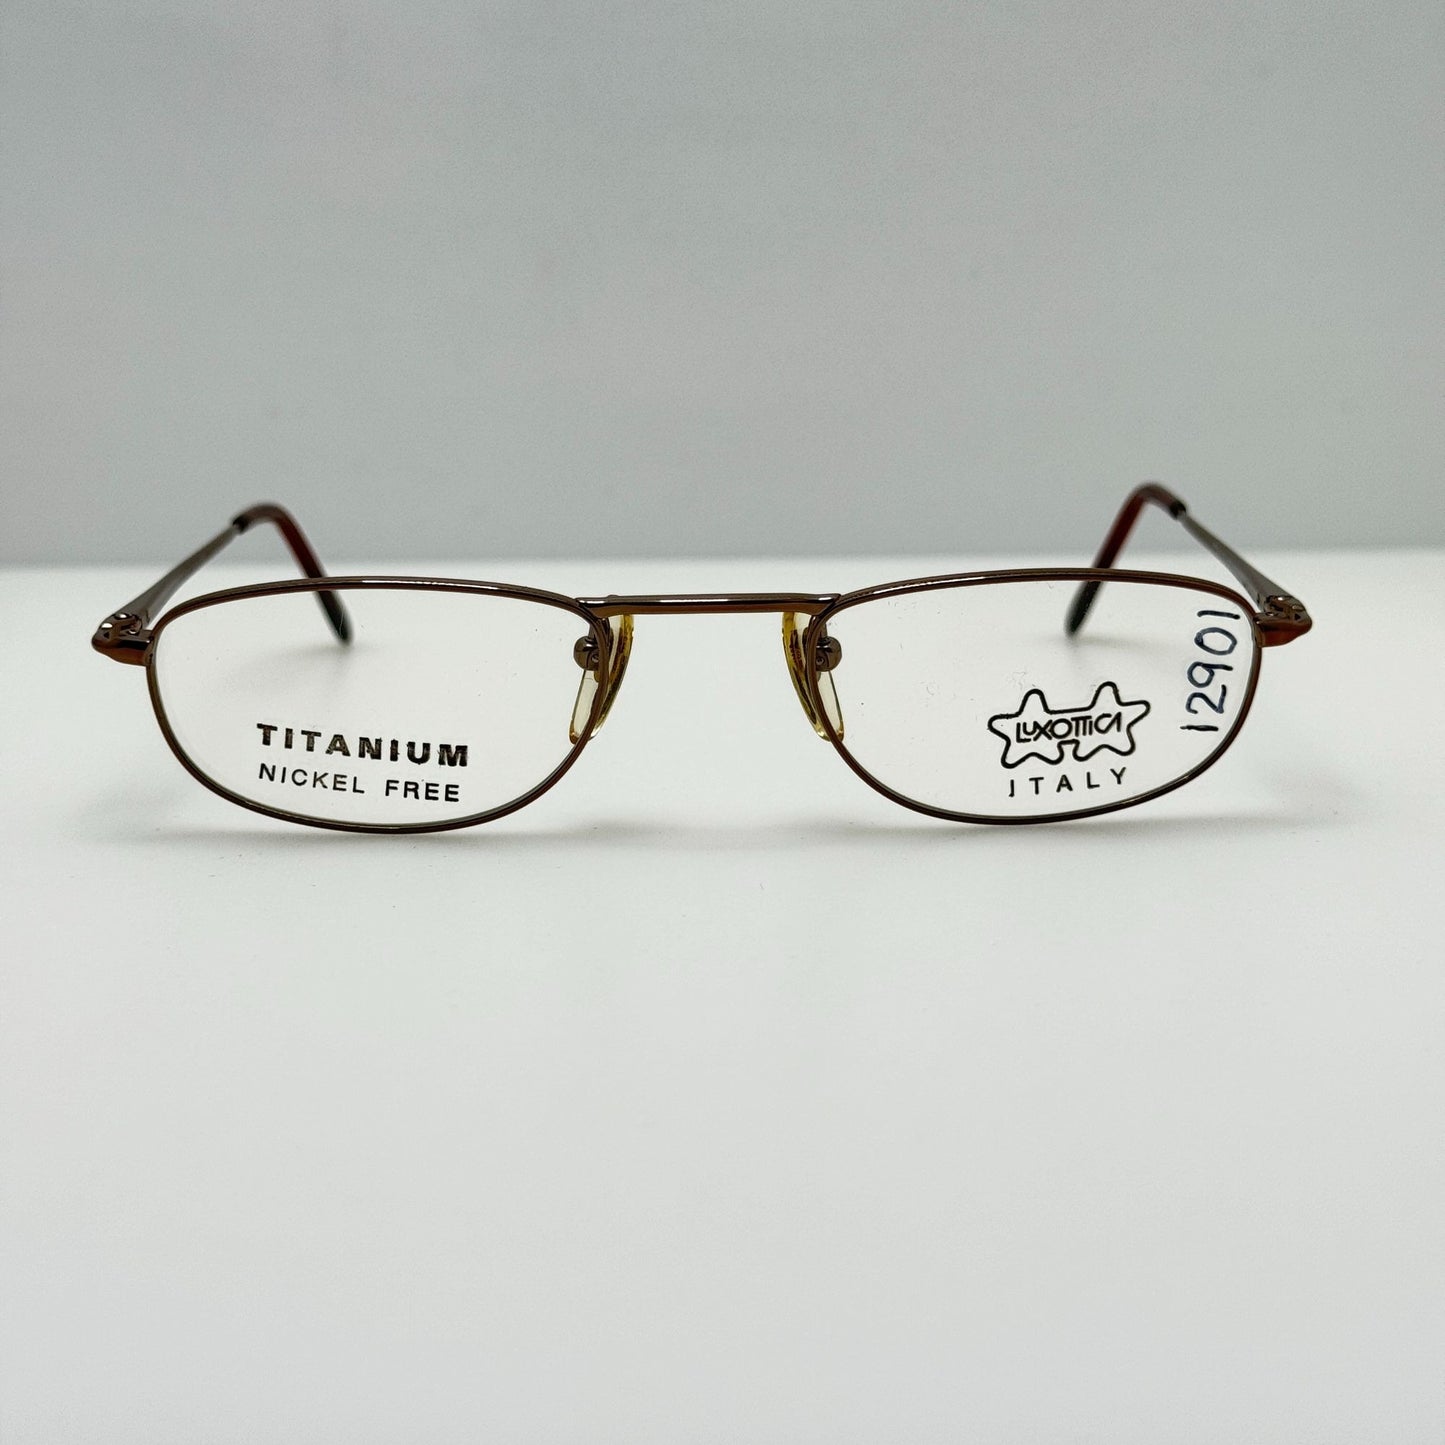 Luxottica Eyeglasses Eye Glasses Frames 1022 4030 50-21-140